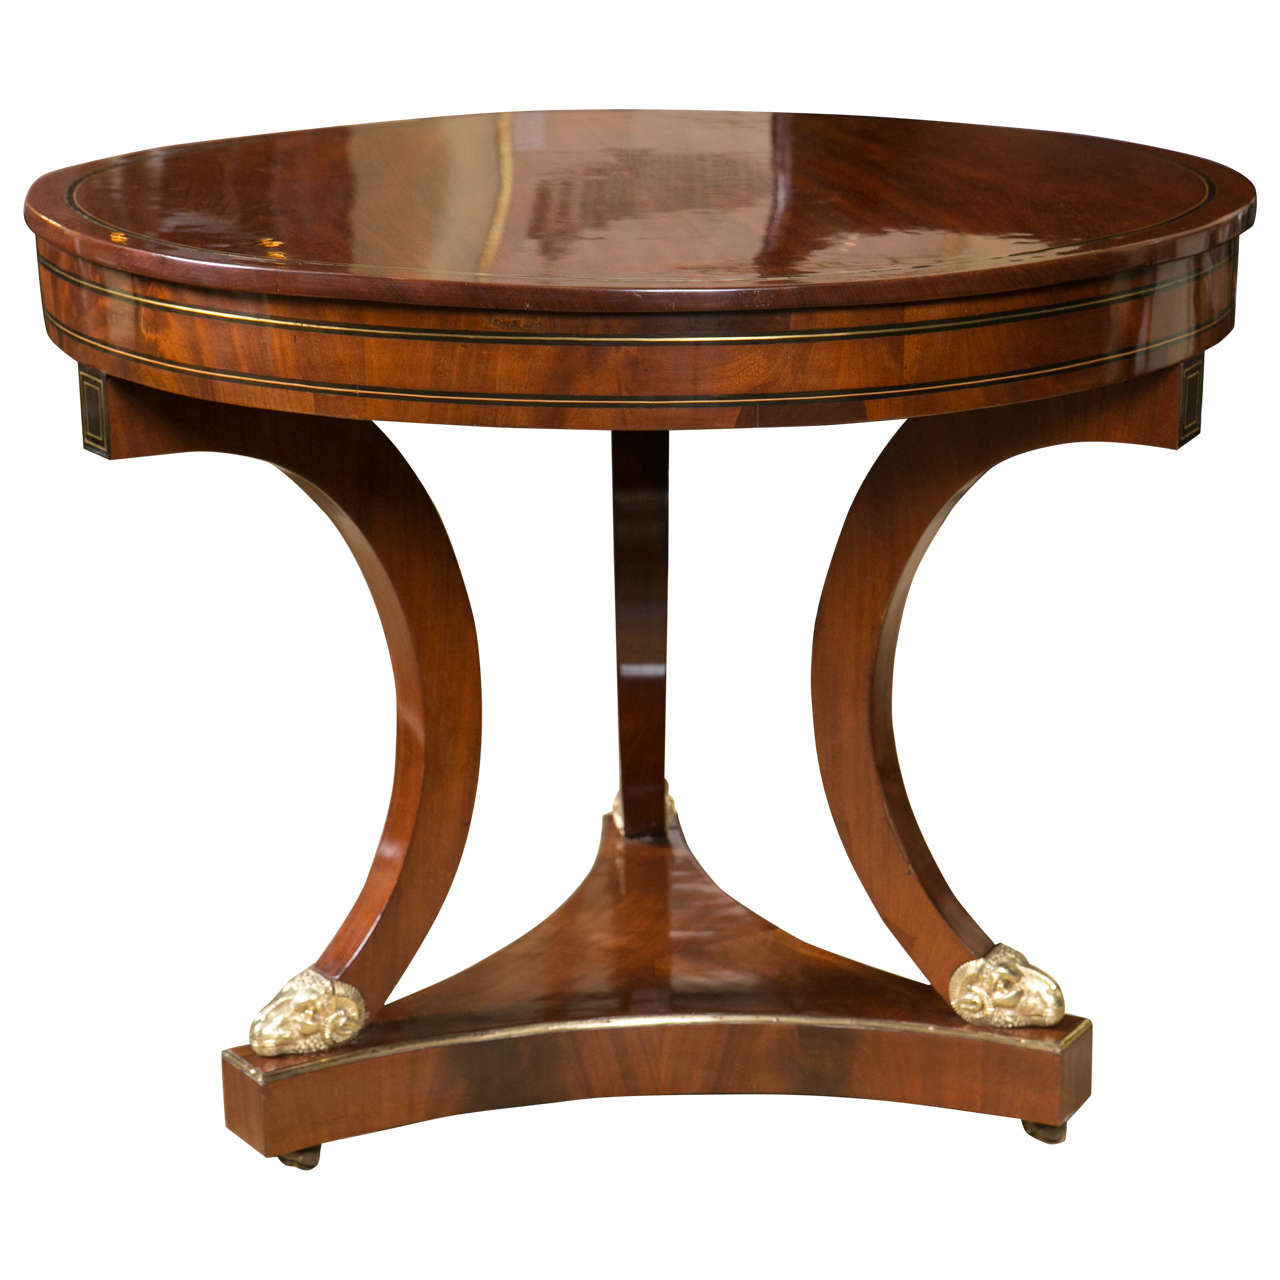 Mid-19th Century Mahogany Gueridon Table